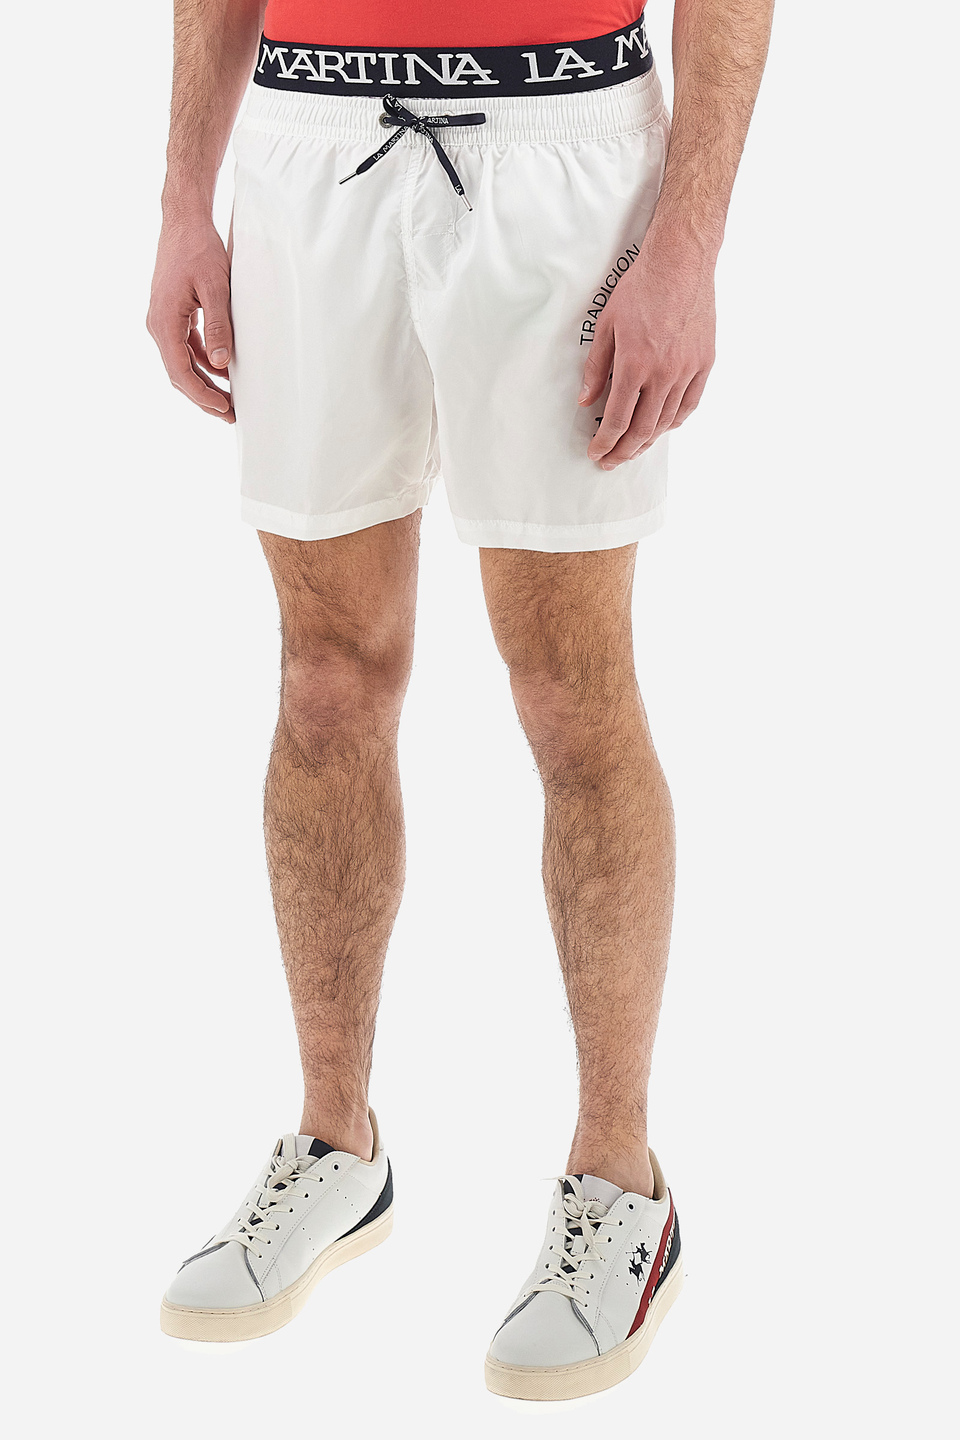 Buy Men's Board Shorts Regular Clothing Online